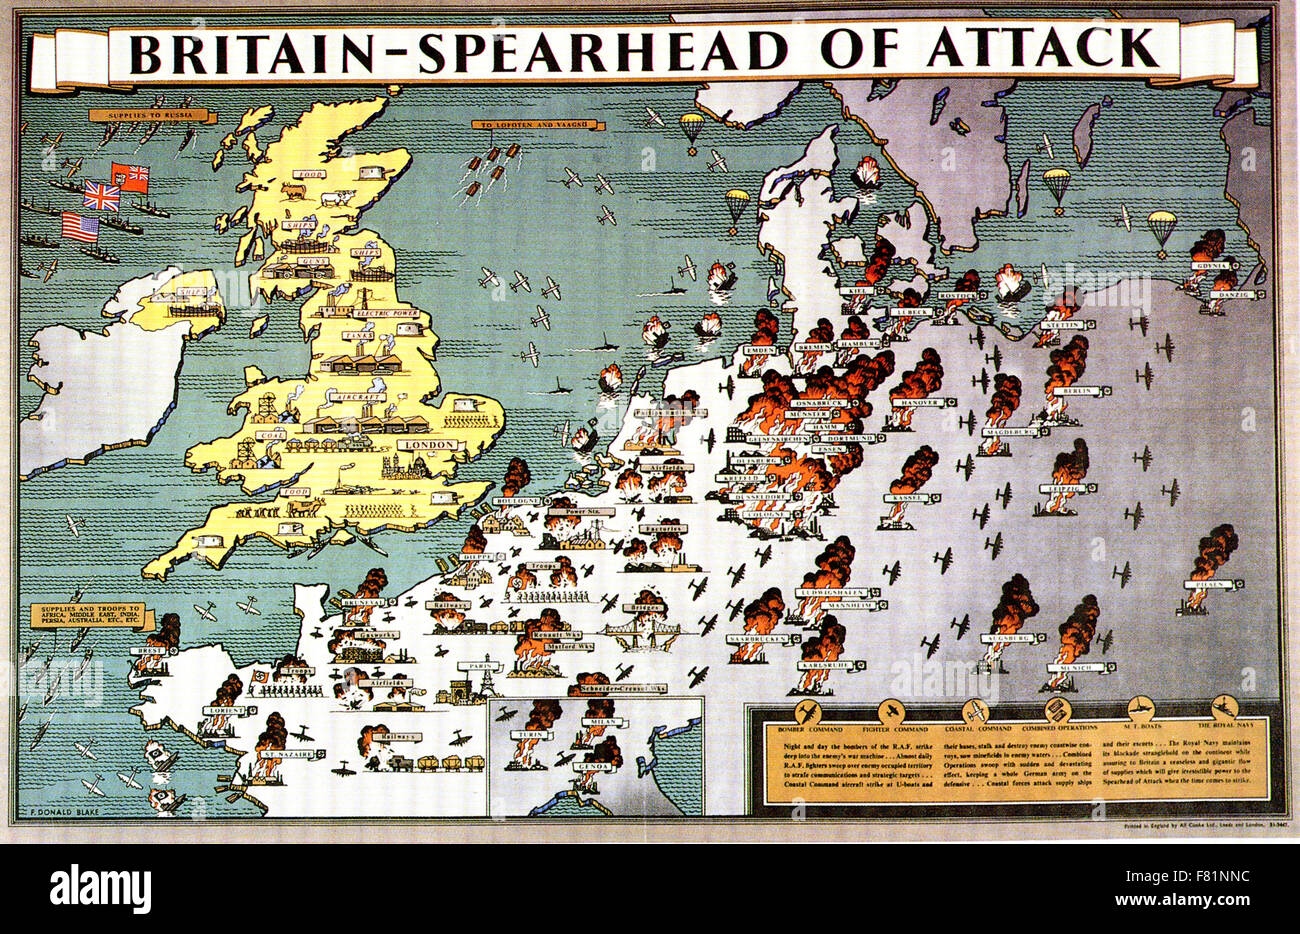 Grande-bretagne - lance d'attaque de l'affiche britannique publié en 1943 montrant une longue pays industrialisés soutenant la campagne de bombardement Bretagne Banque D'Images